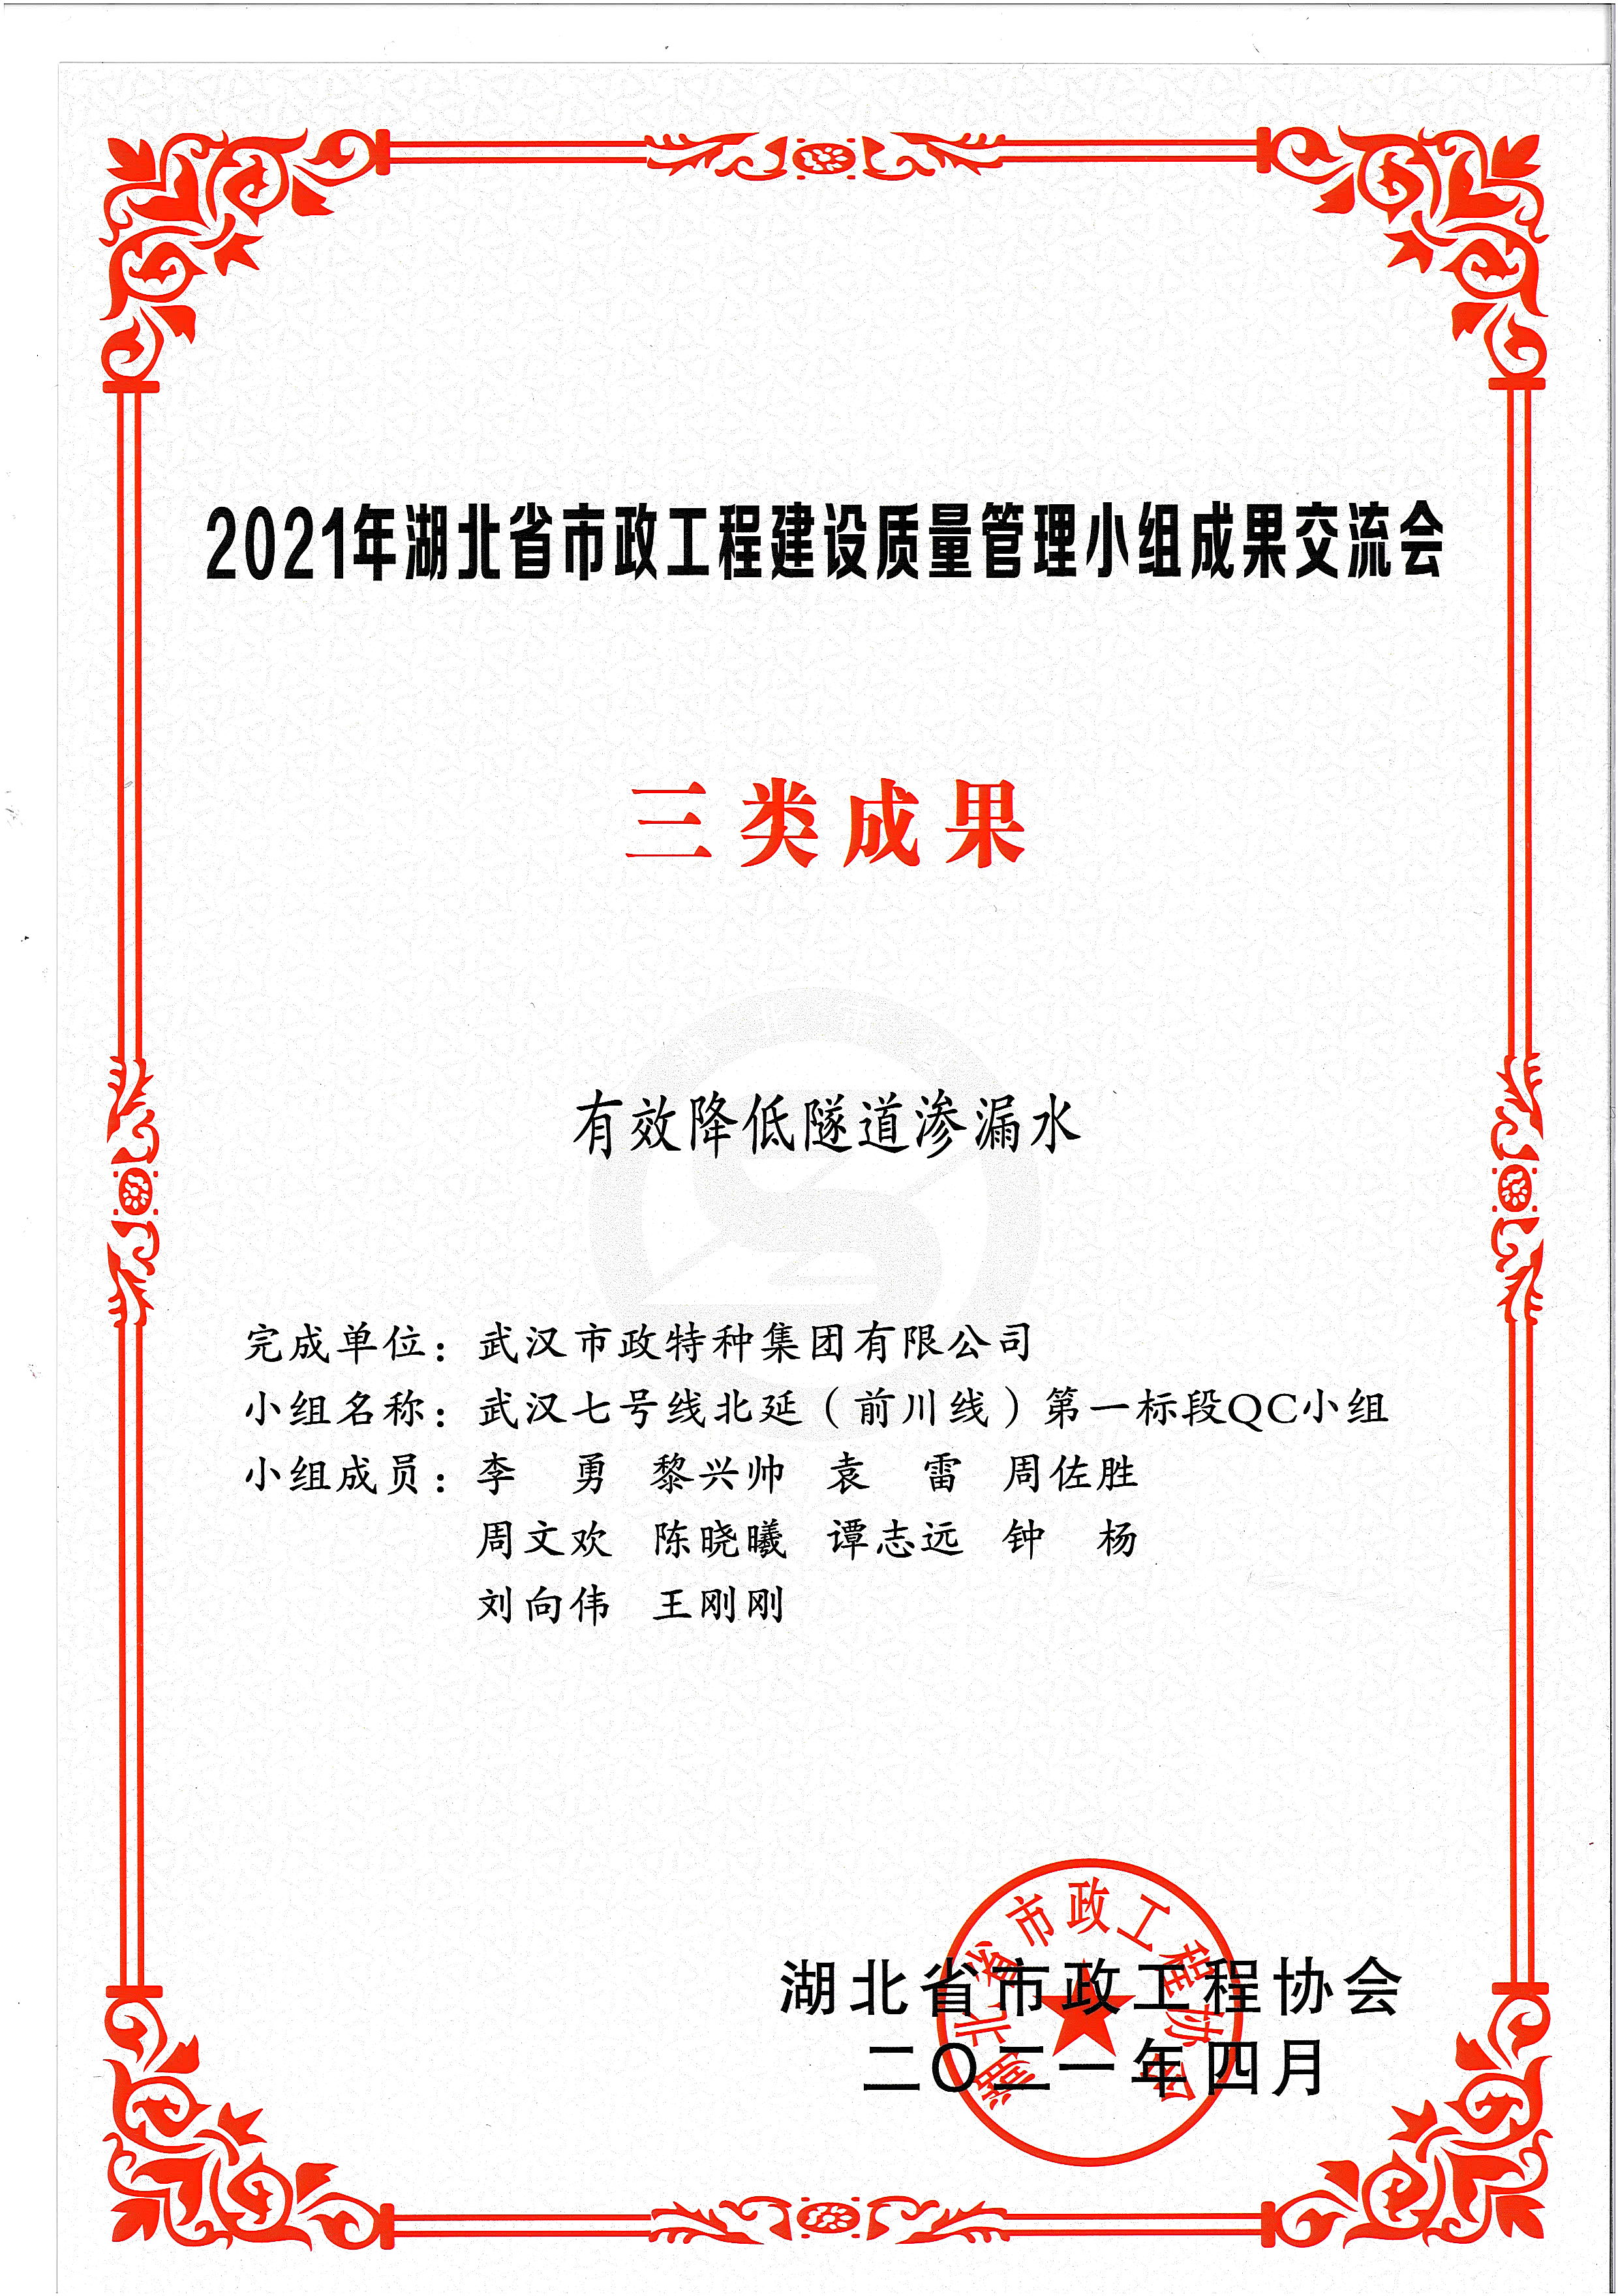 湖北省市政协会QC成果奖——有效降低隧道渗漏水